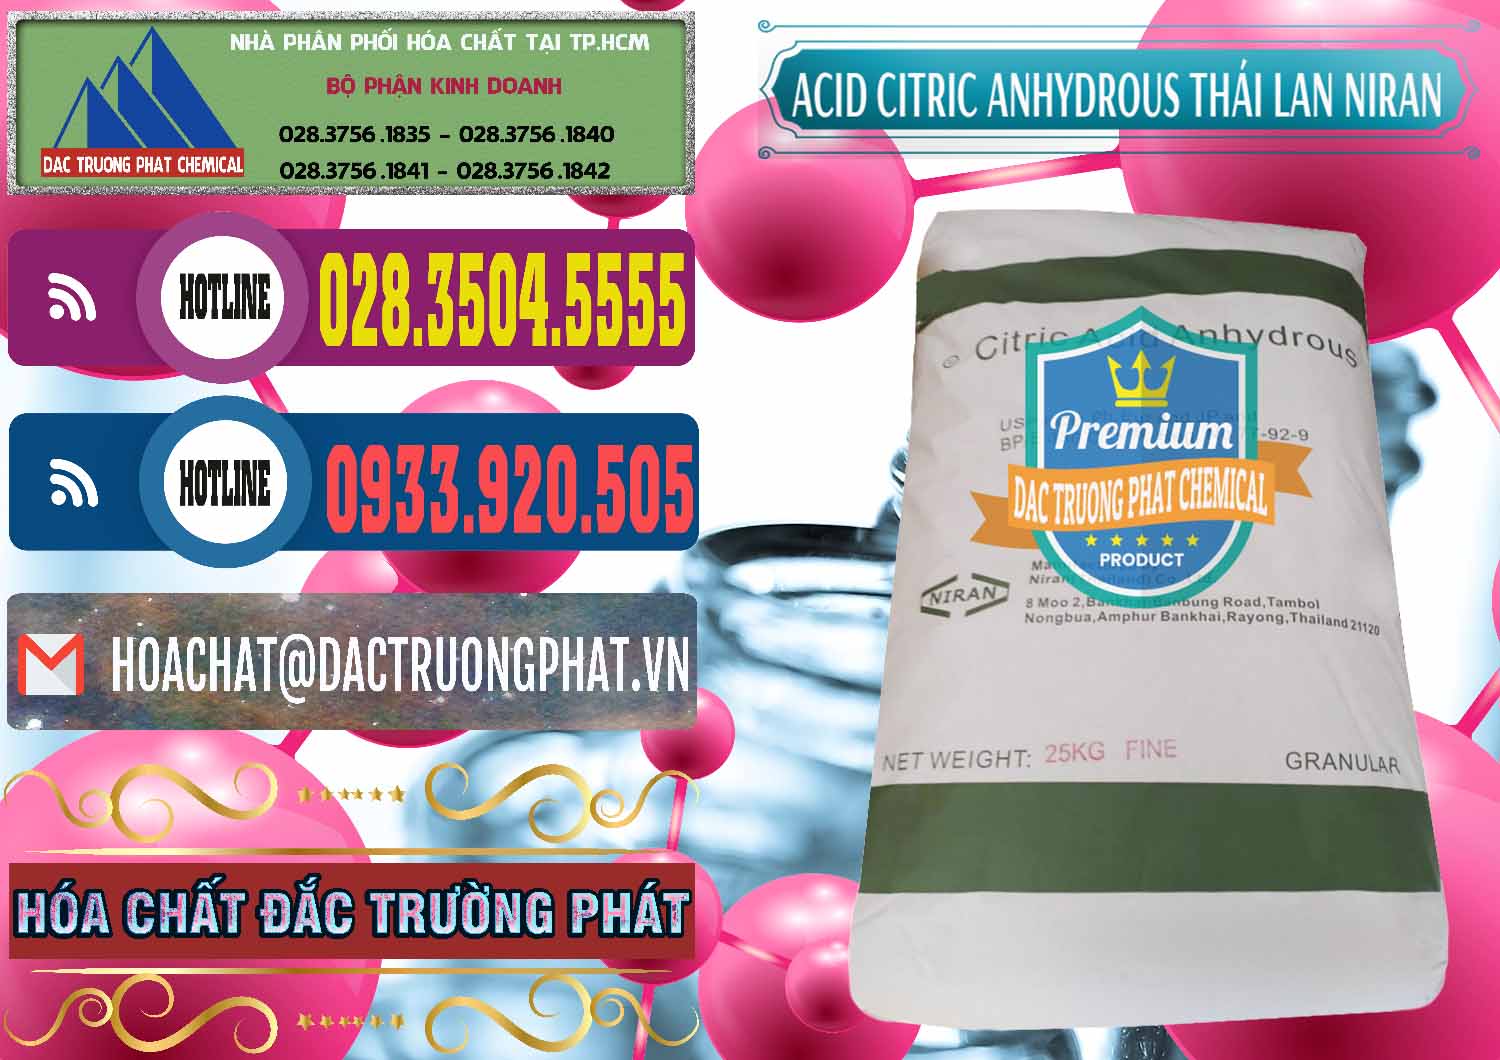 Chuyên kinh doanh & bán Acid Citric - Axit Citric Anhydrous - Thái Lan Niran - 0231 - Cty nhập khẩu _ phân phối hóa chất tại TP.HCM - muabanhoachat.com.vn